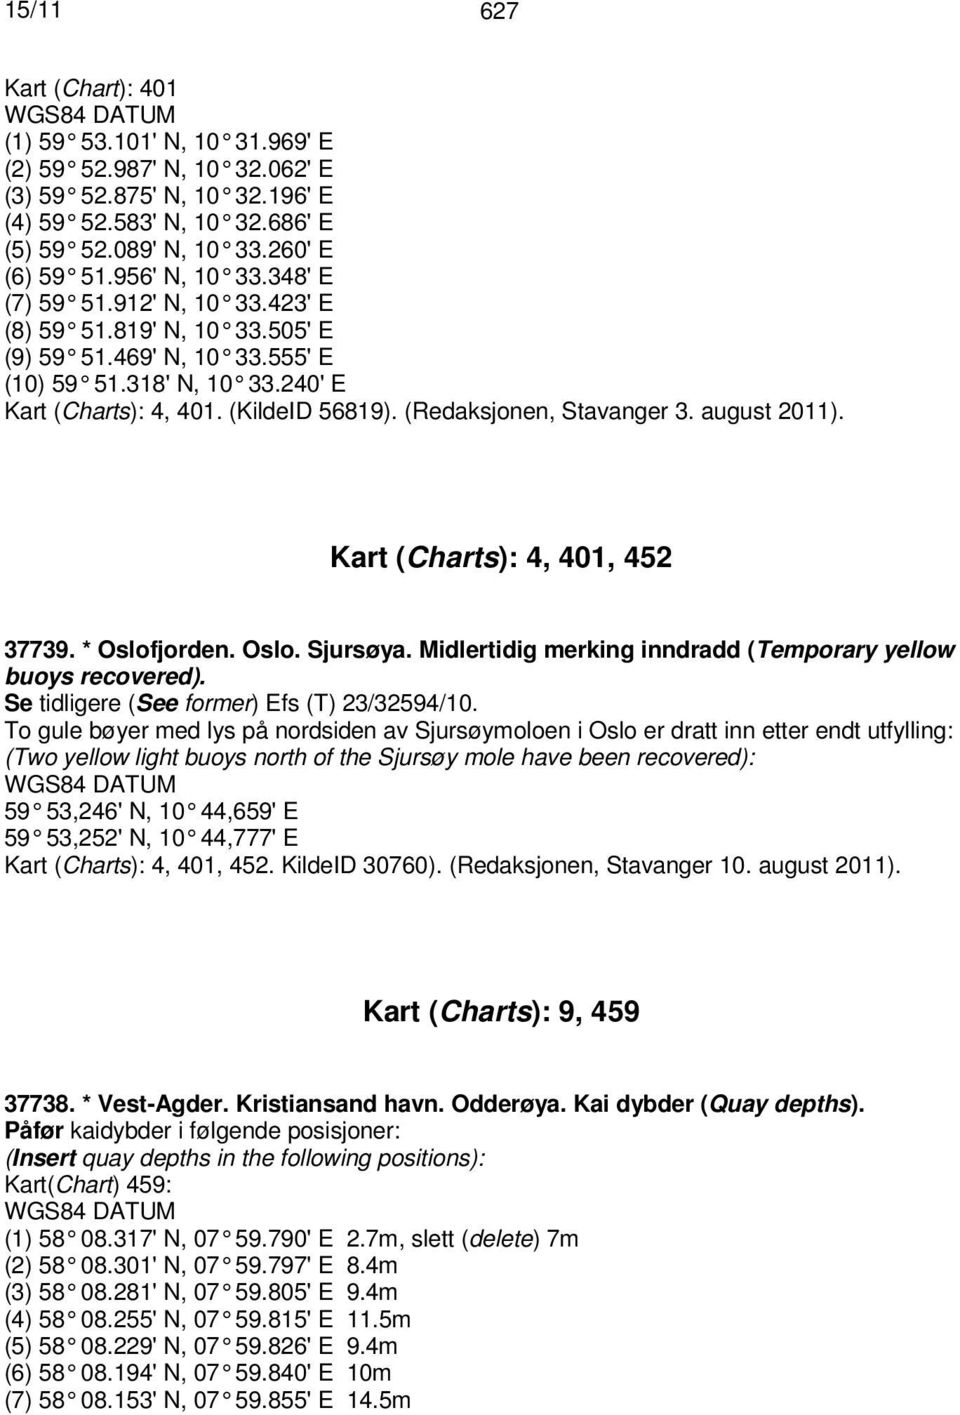 (Redaksjonen, Stavanger 3. august 2011). Kart (Charts): 4, 401, 452 37739. * Oslofjorden. Oslo. Sjursøya. Midlertidig merking inndradd (Temporary yellow buoys recovered).